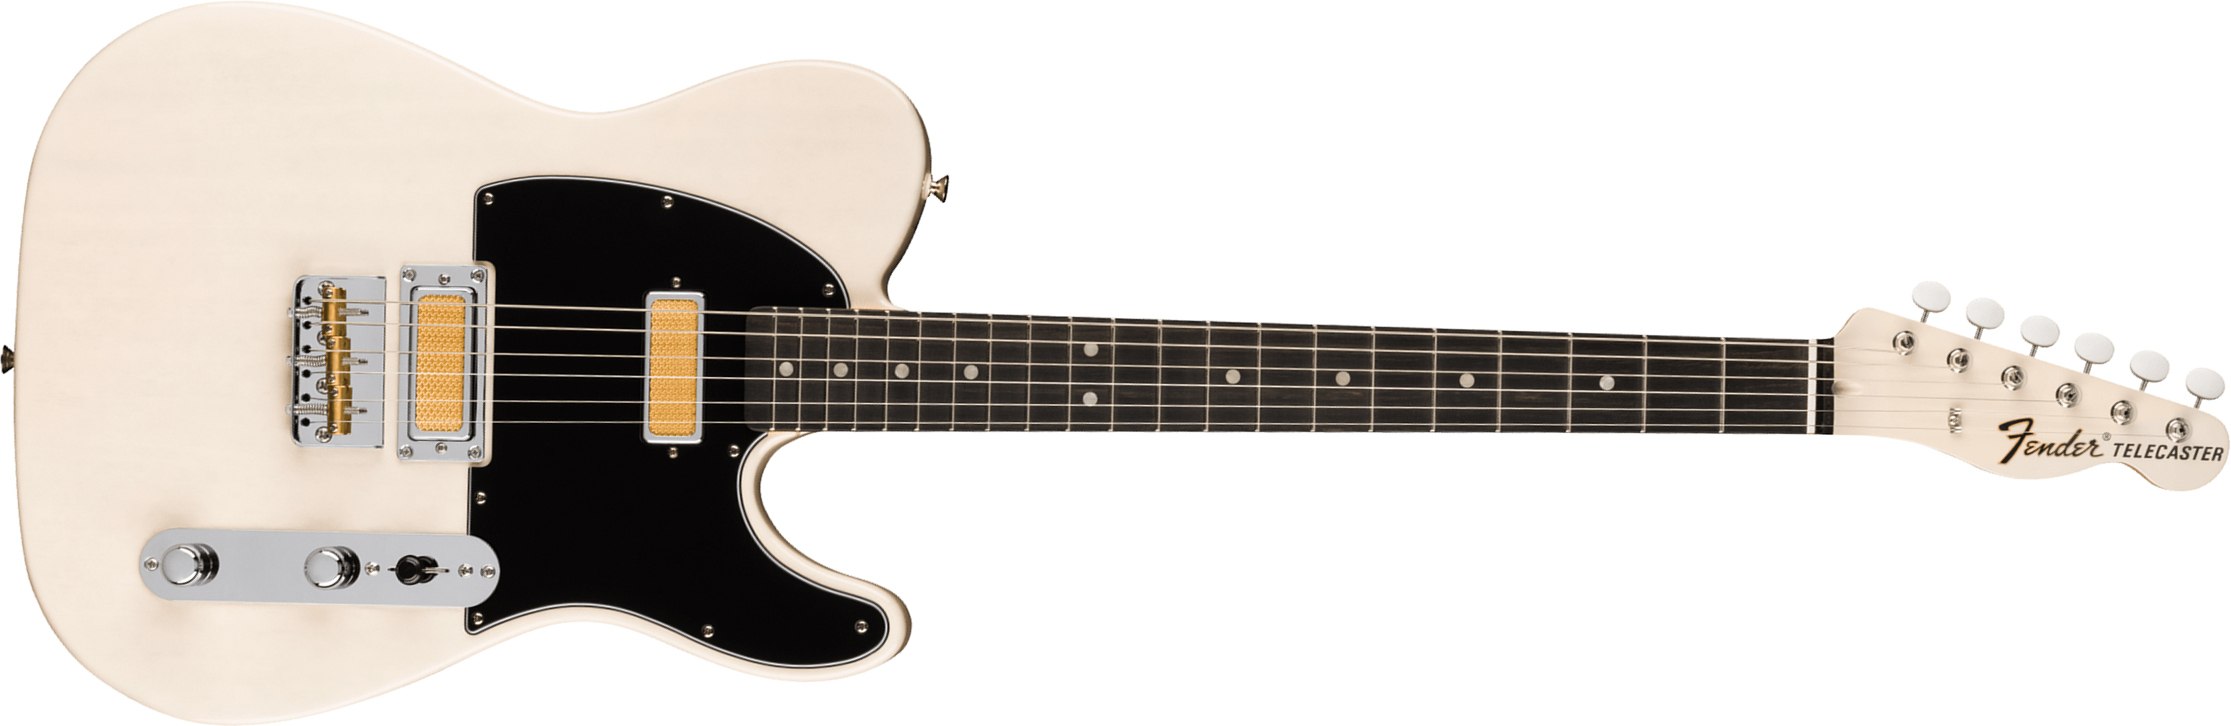 Fender Tele Gold Foil Ltd Mex 2mh Ht Eb - White Blonde - Guitarra eléctrica con forma de tel - Main picture